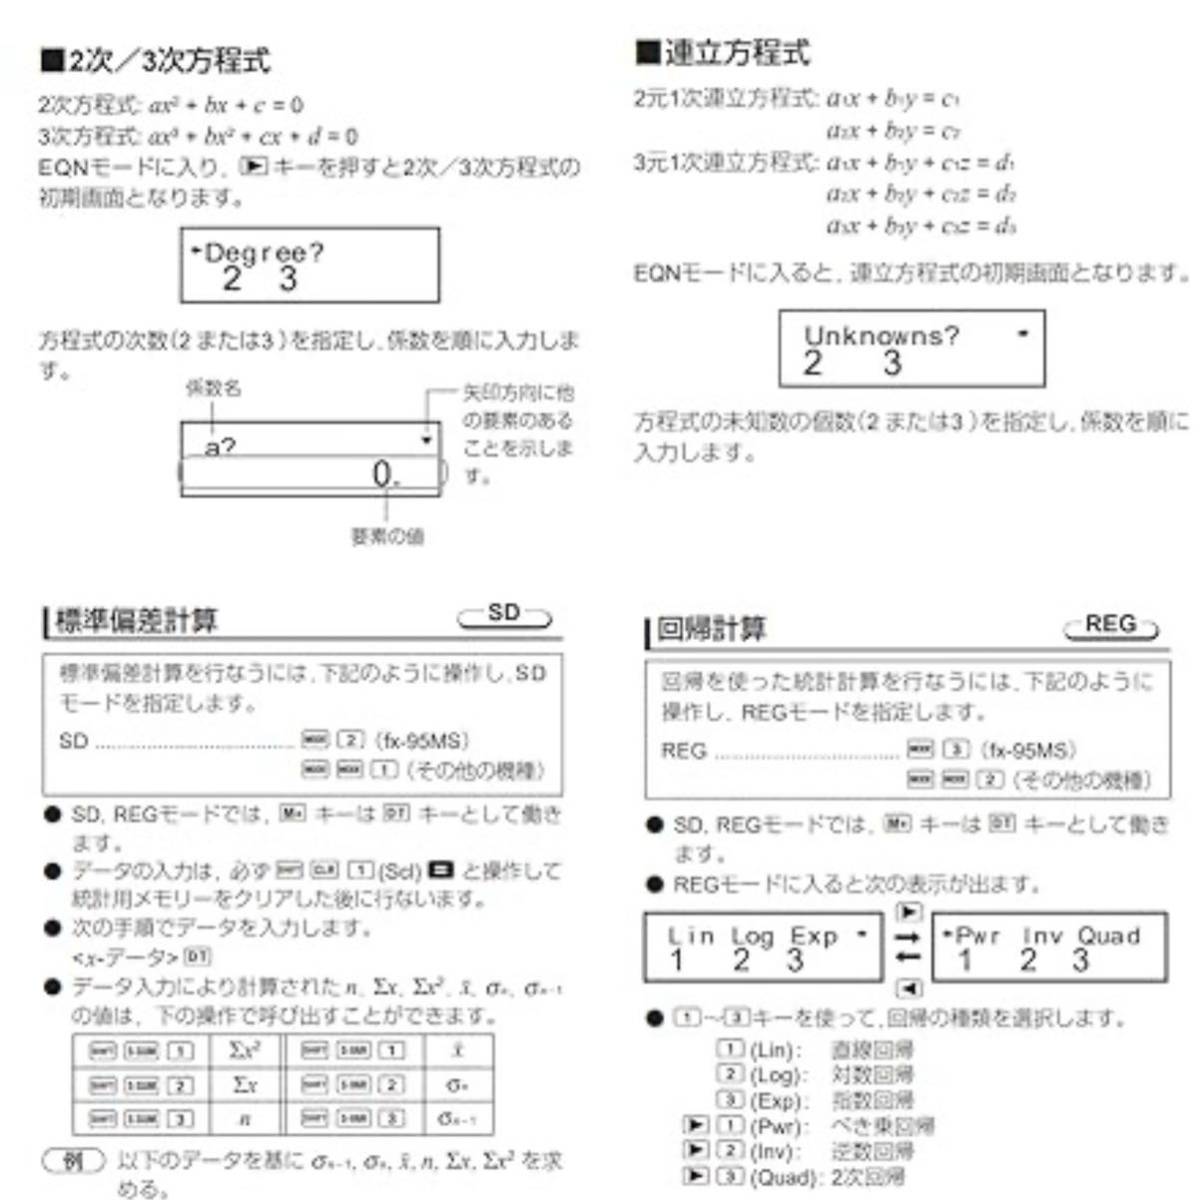 関数電卓 電子メモパッド付き 関数・機能400以上 微分積分・統計計算・数学自然表示 建築現場 数学電卓 折りたたみ式 日本語説明書付きの画像10